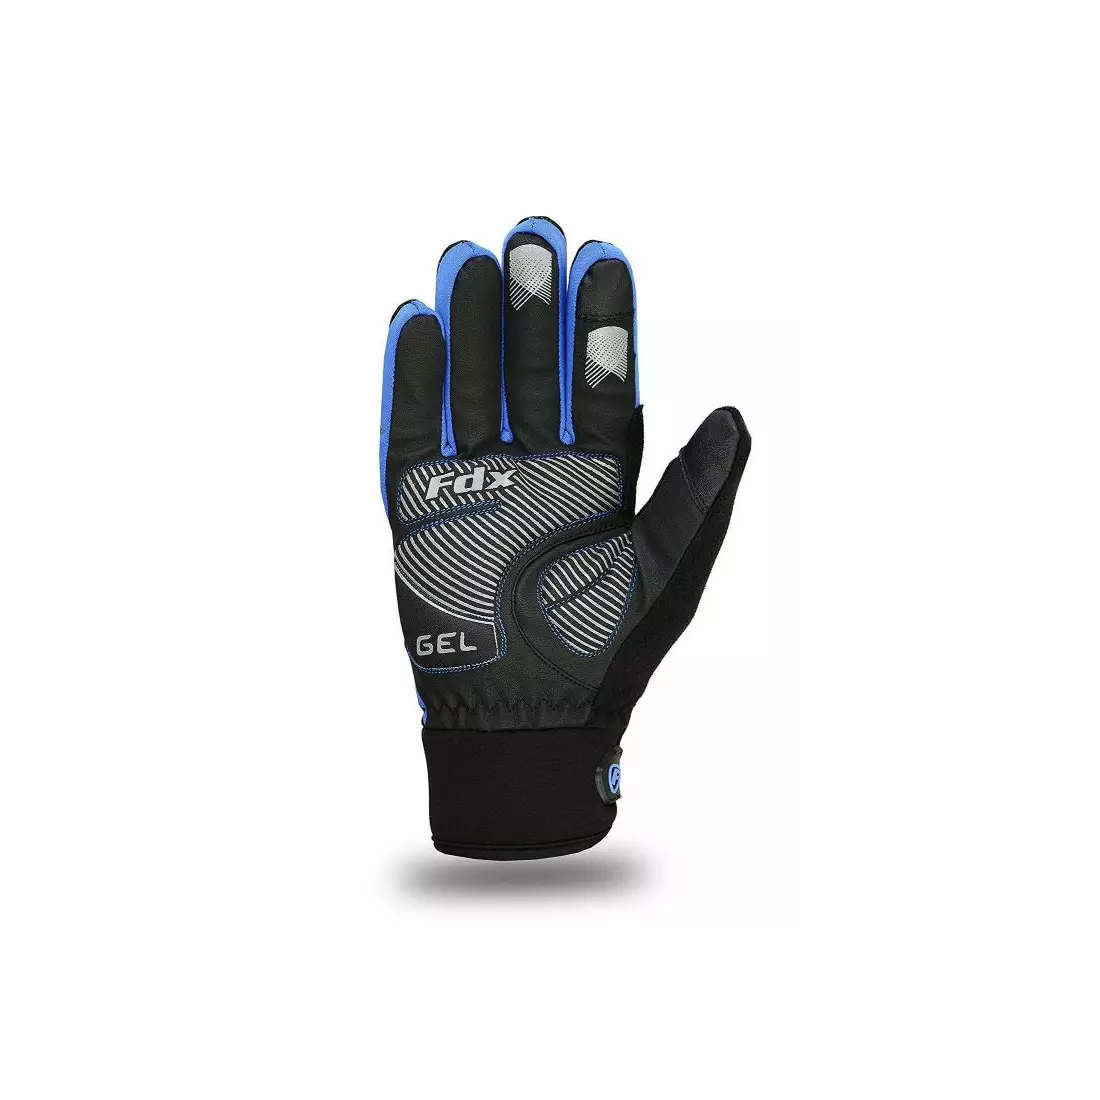 FDX 1901 Full Finger zimné cyklistické rukavice, čierne a modré